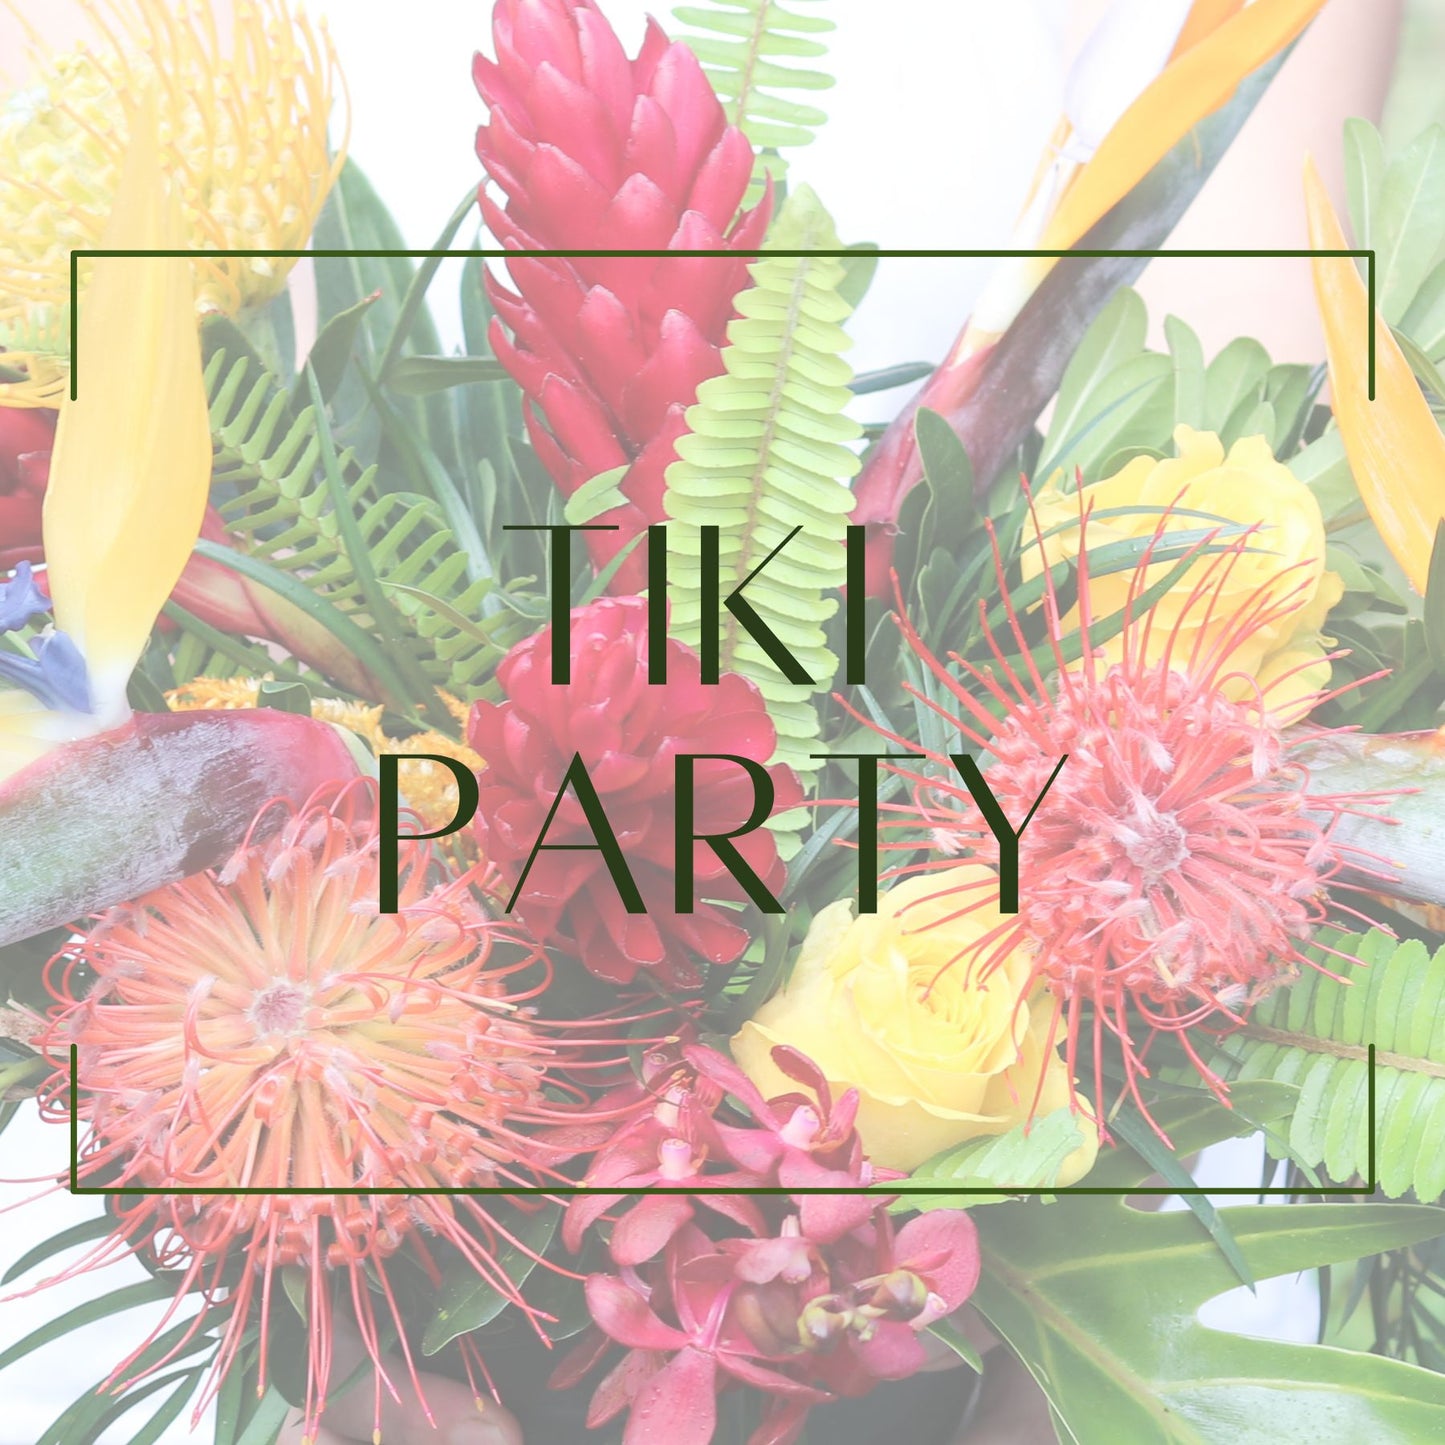 Tiki Party - Accent Arrangement